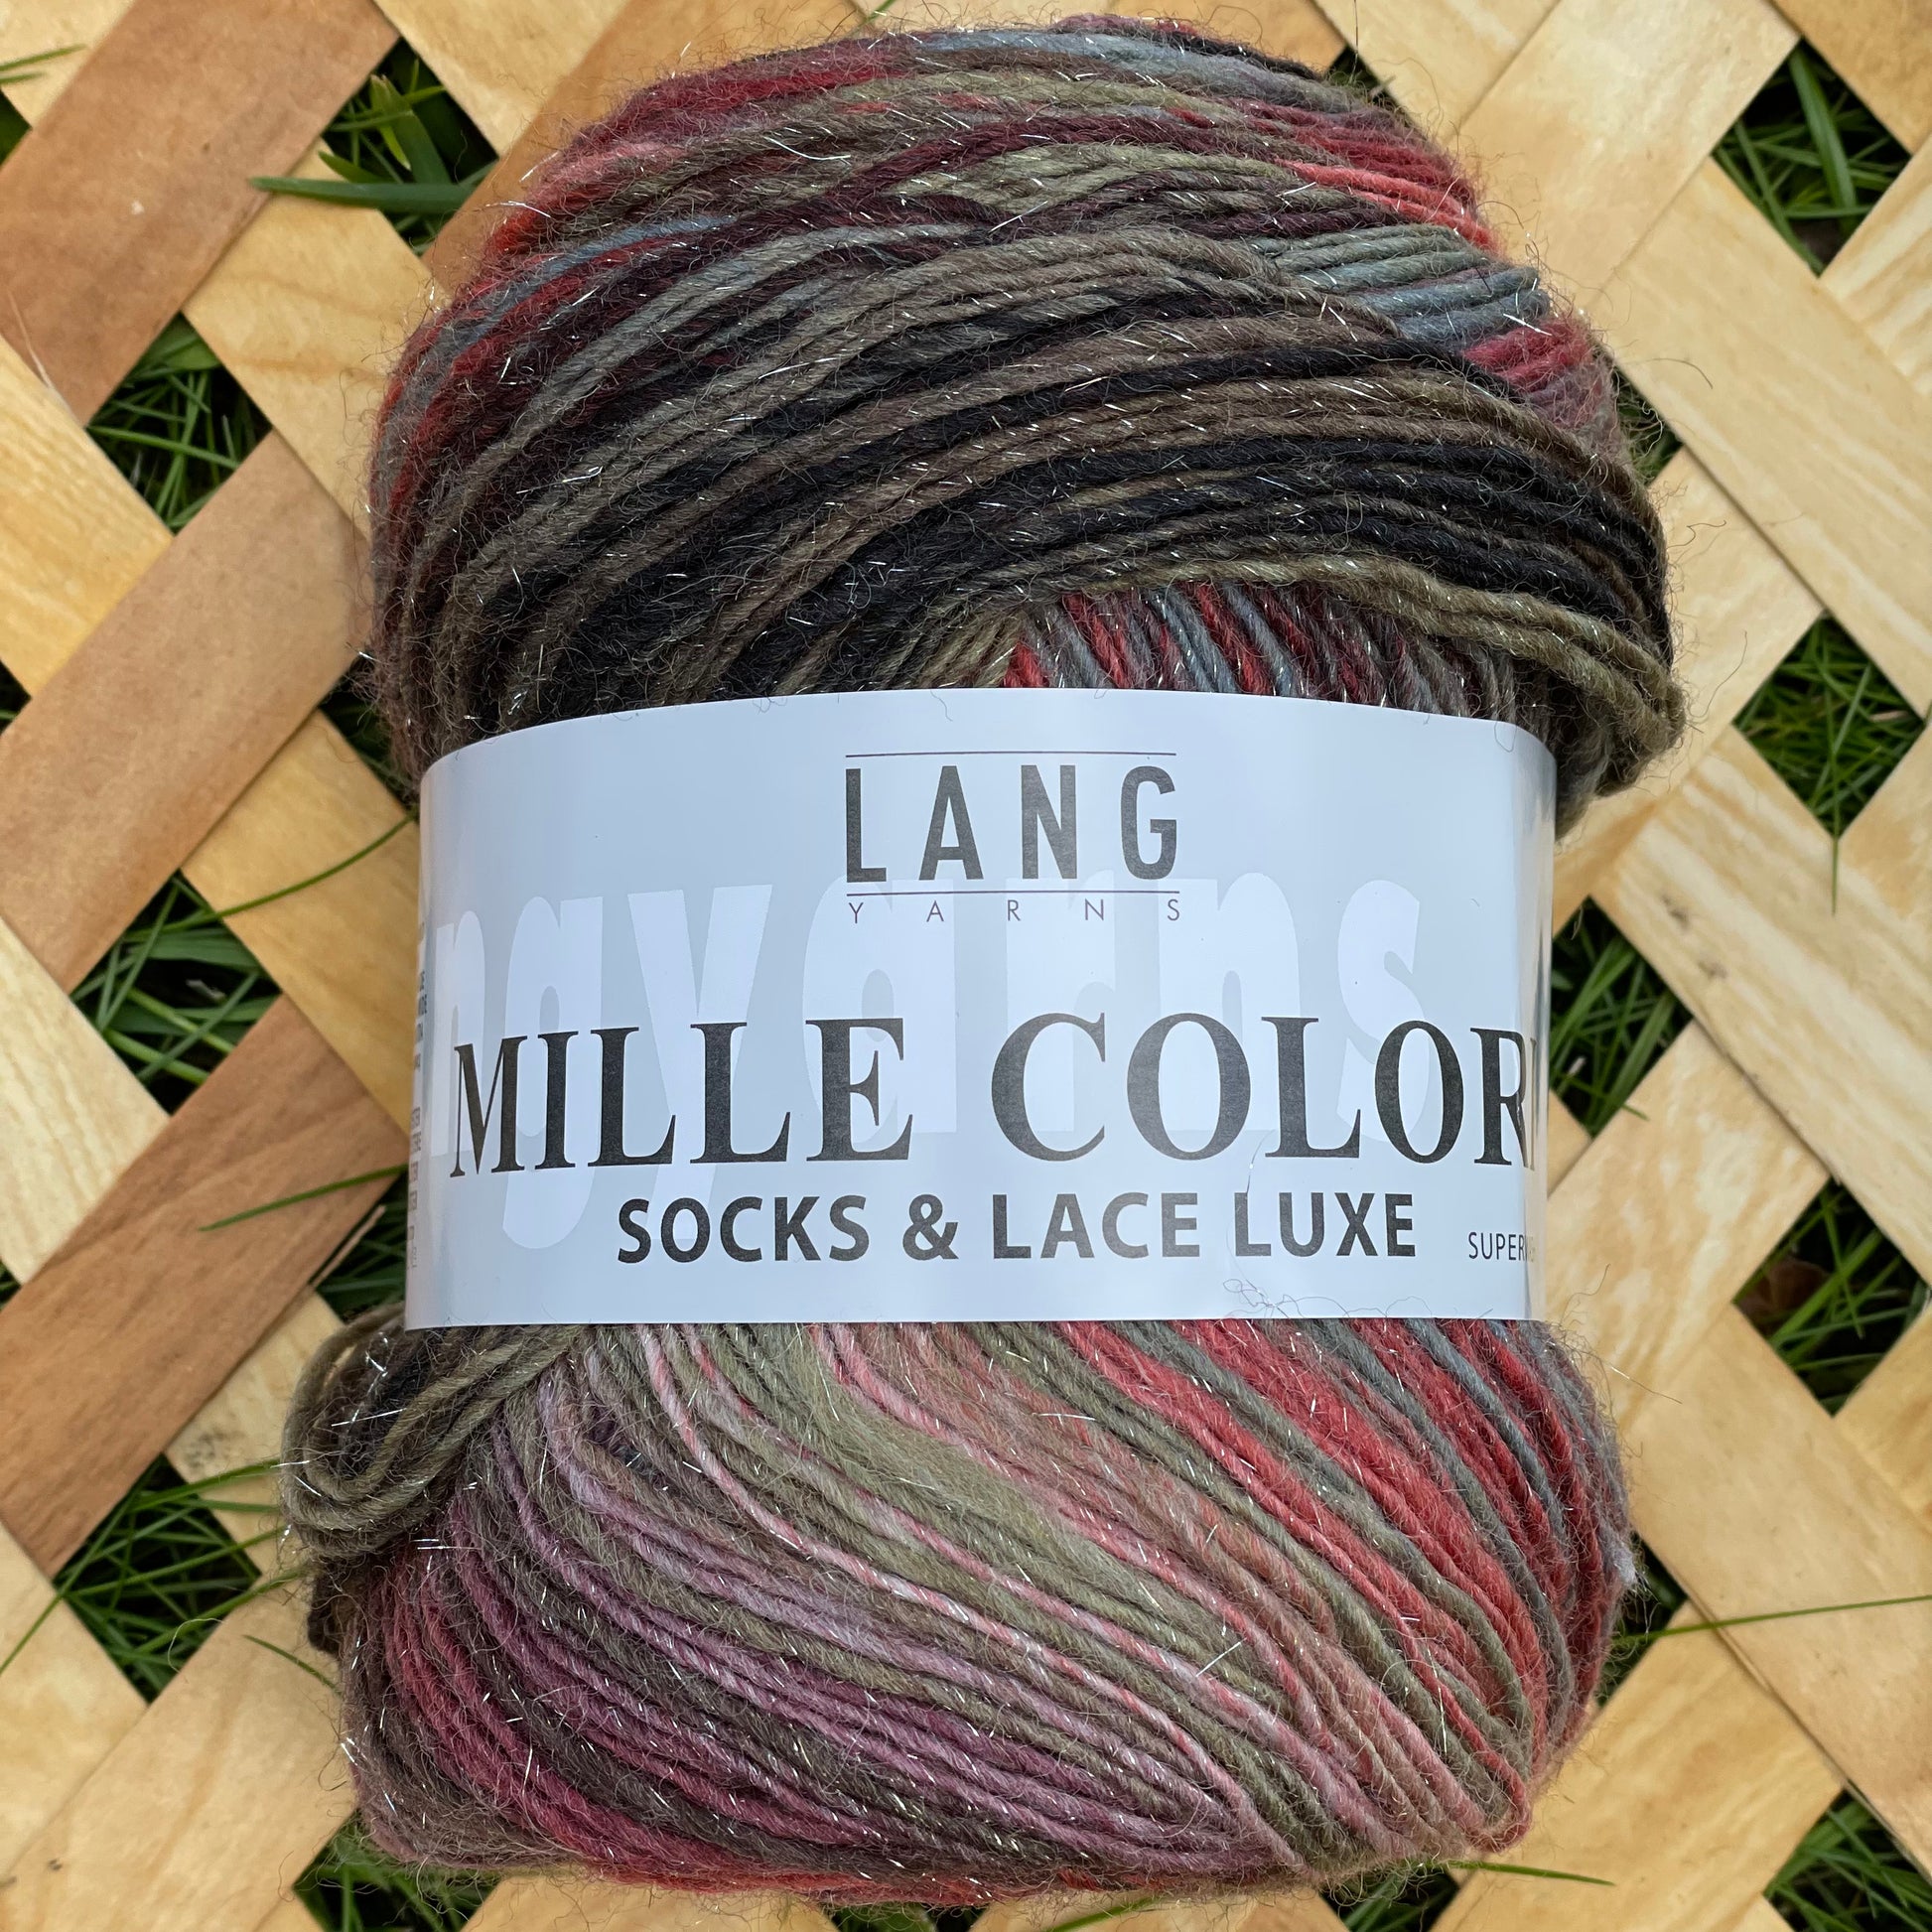 Mille Colori Socks and Lace Luxe - strømpegarn med flot farveskifte og diskret glimmertråd.